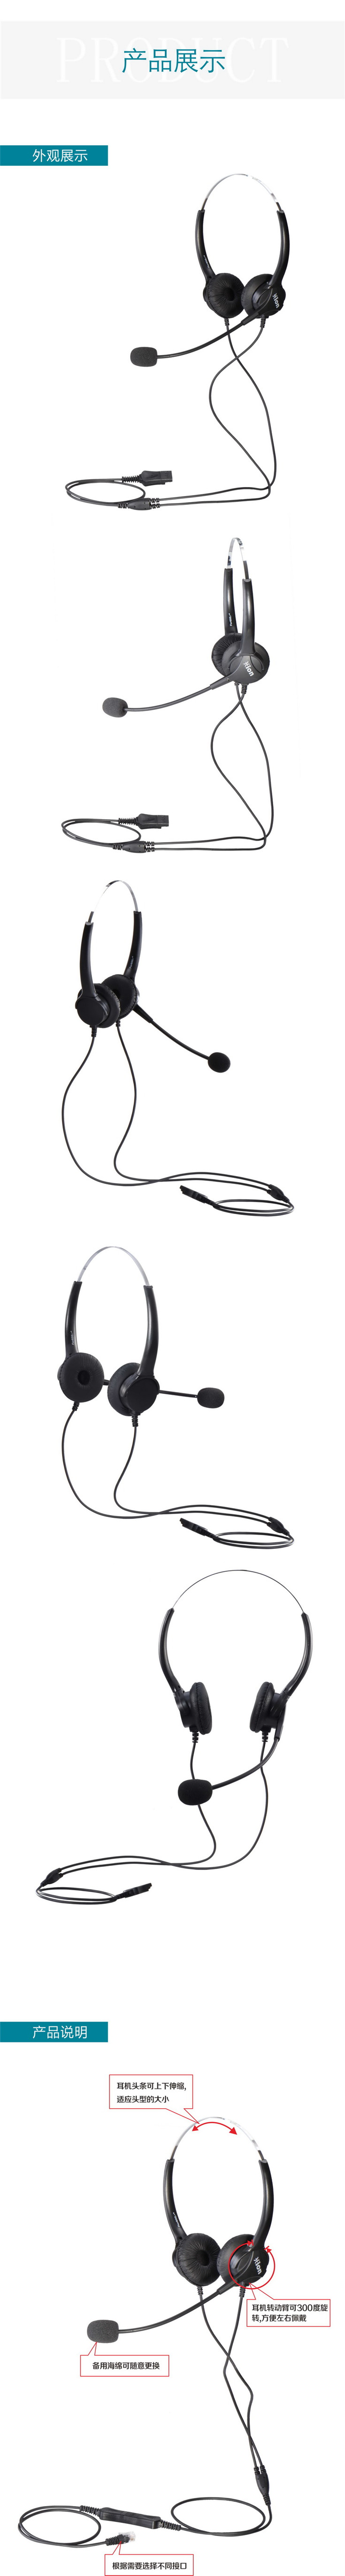 北恩FOR600D呼叫中心话务耳机 双耳耳机 客服耳机 电话耳机耳麦